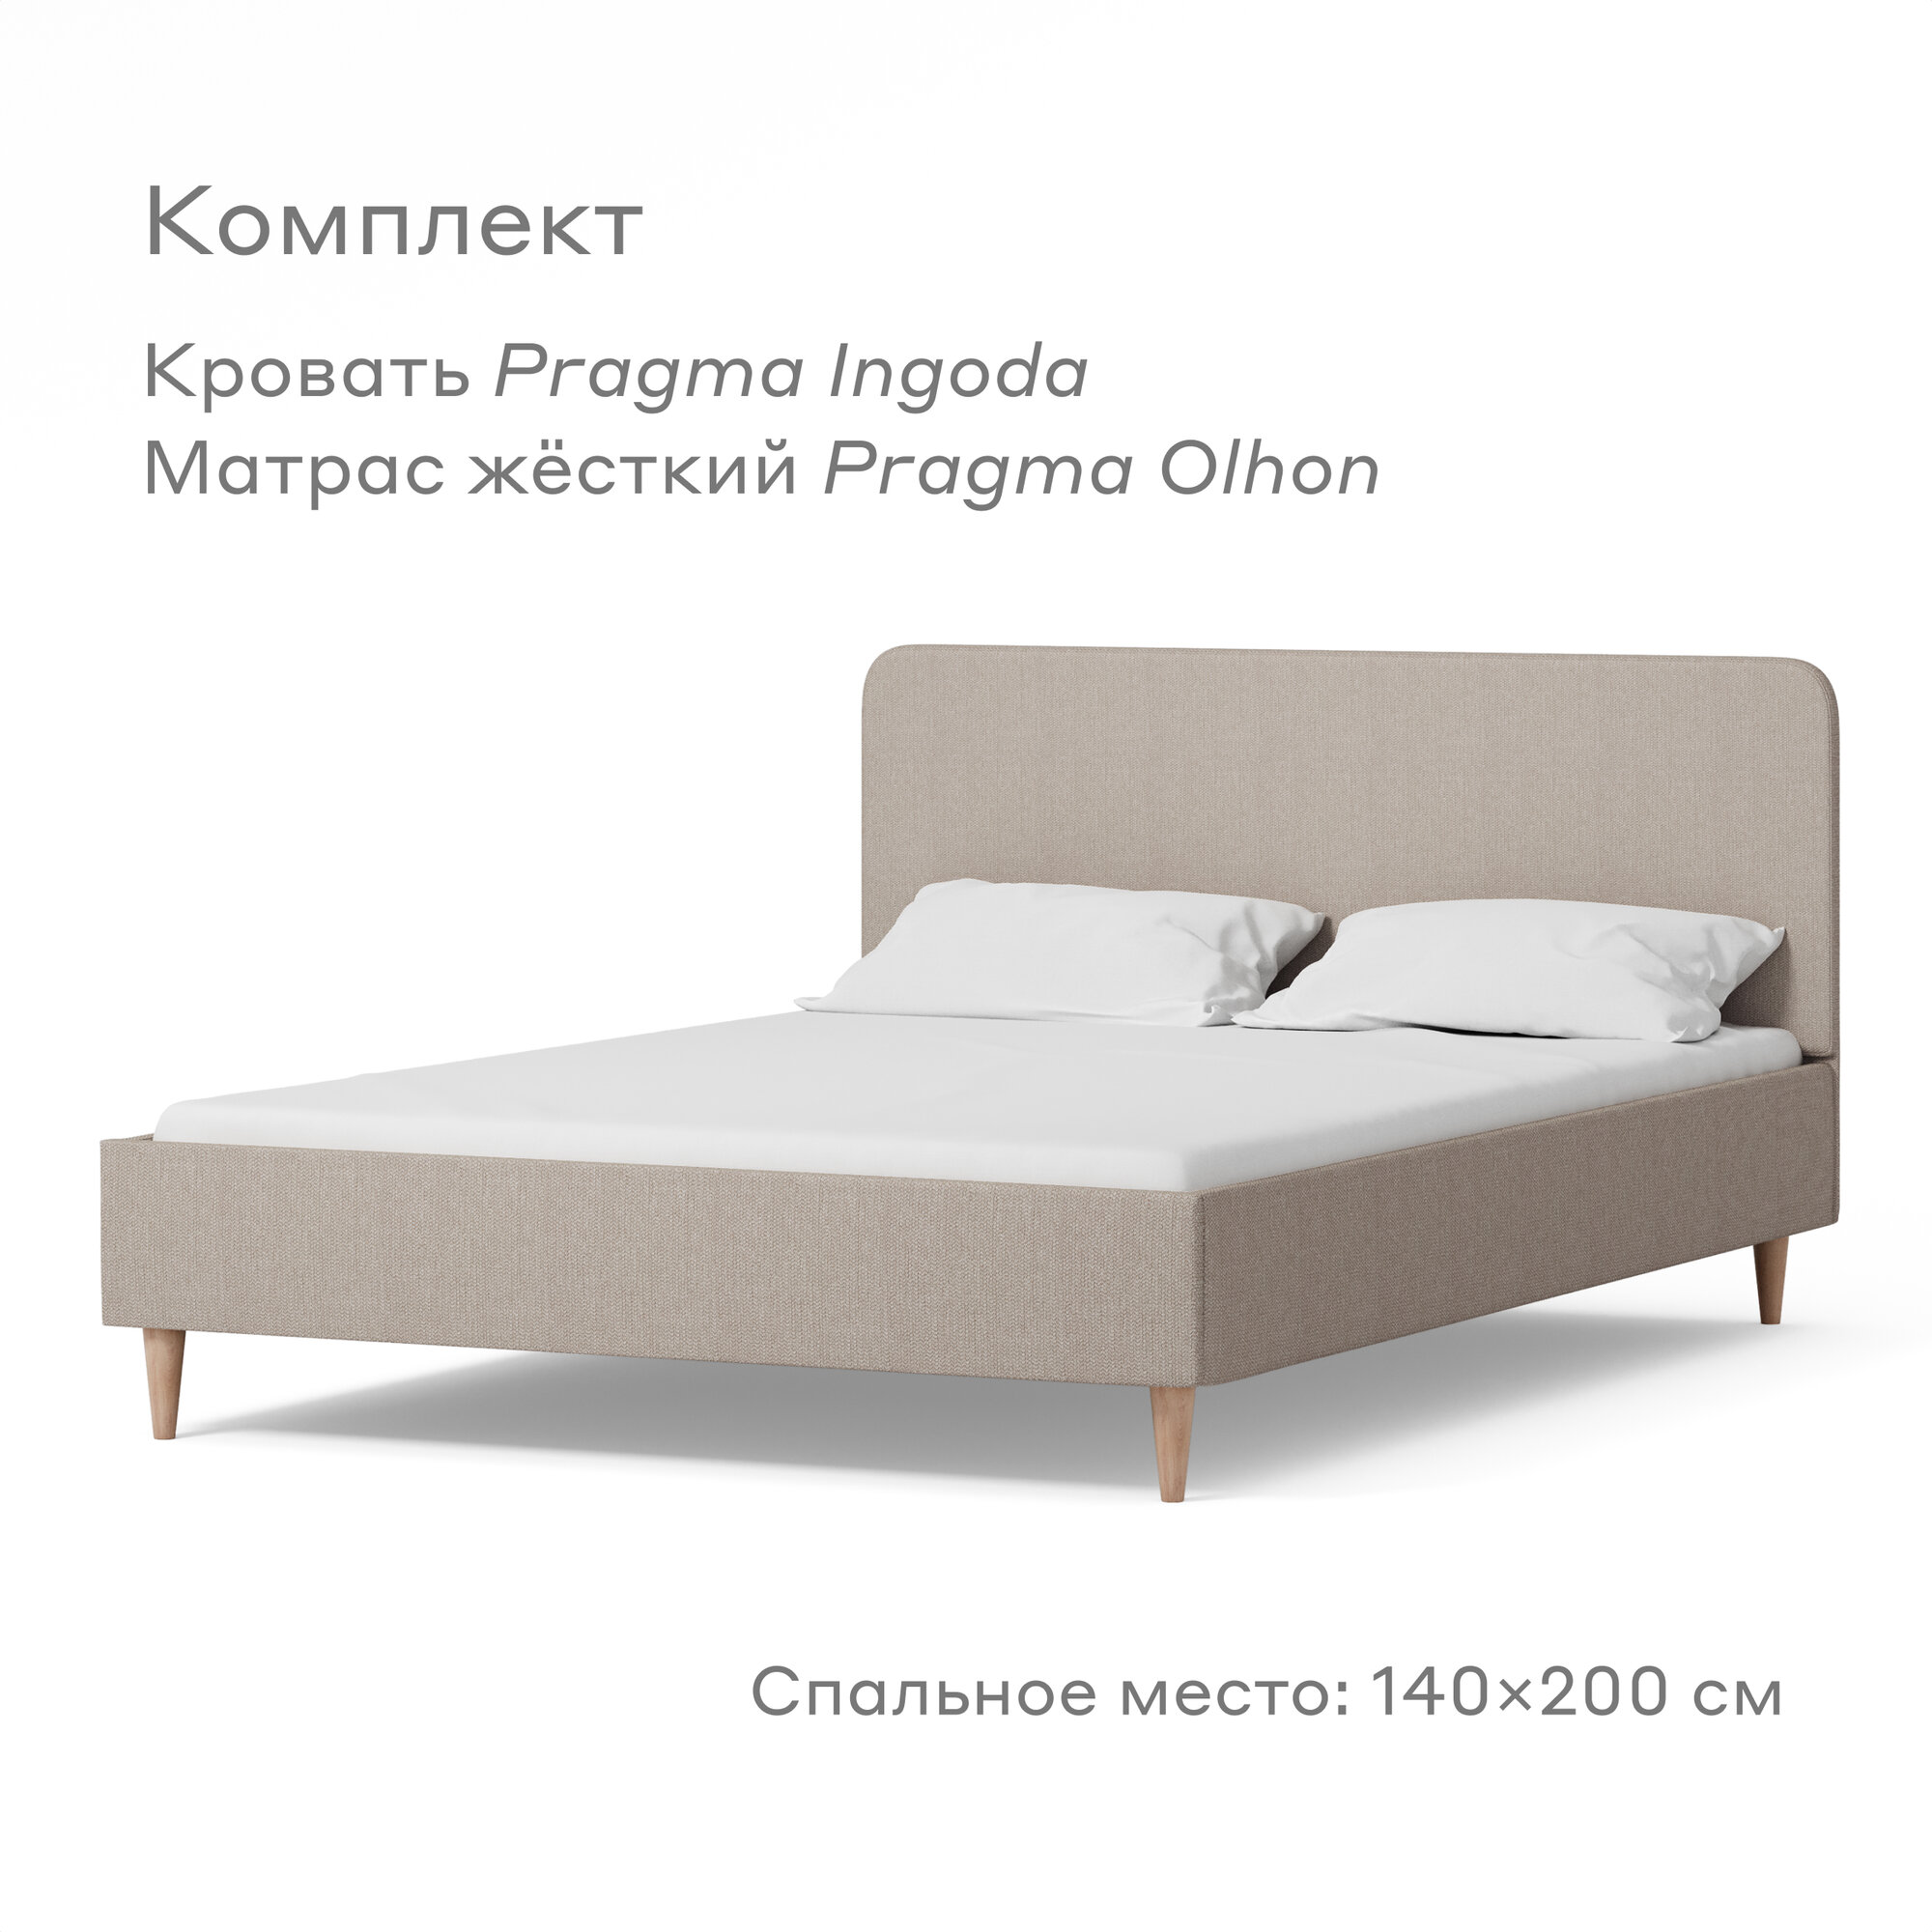 Кровать Pragma  с жестким матрасом , размер (ДхШ): 206х145 см, спальное место (ДхШ): 200х140 см, обивка: текстиль, с матрасом, цвет: бежевый